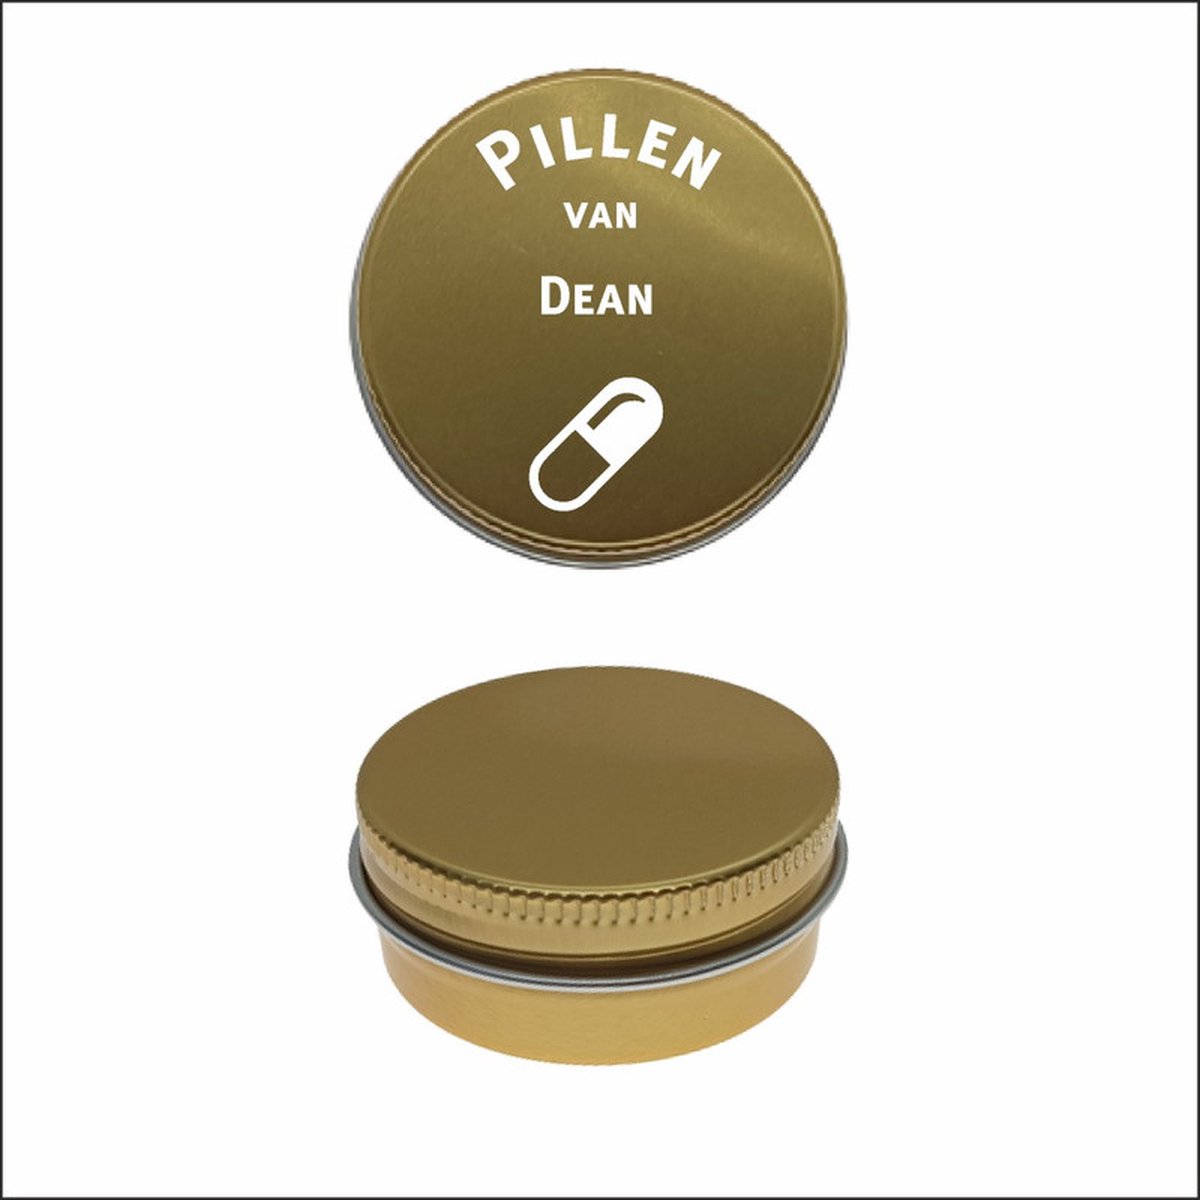 Pillen Blikje Met Naam Gravering - Dean